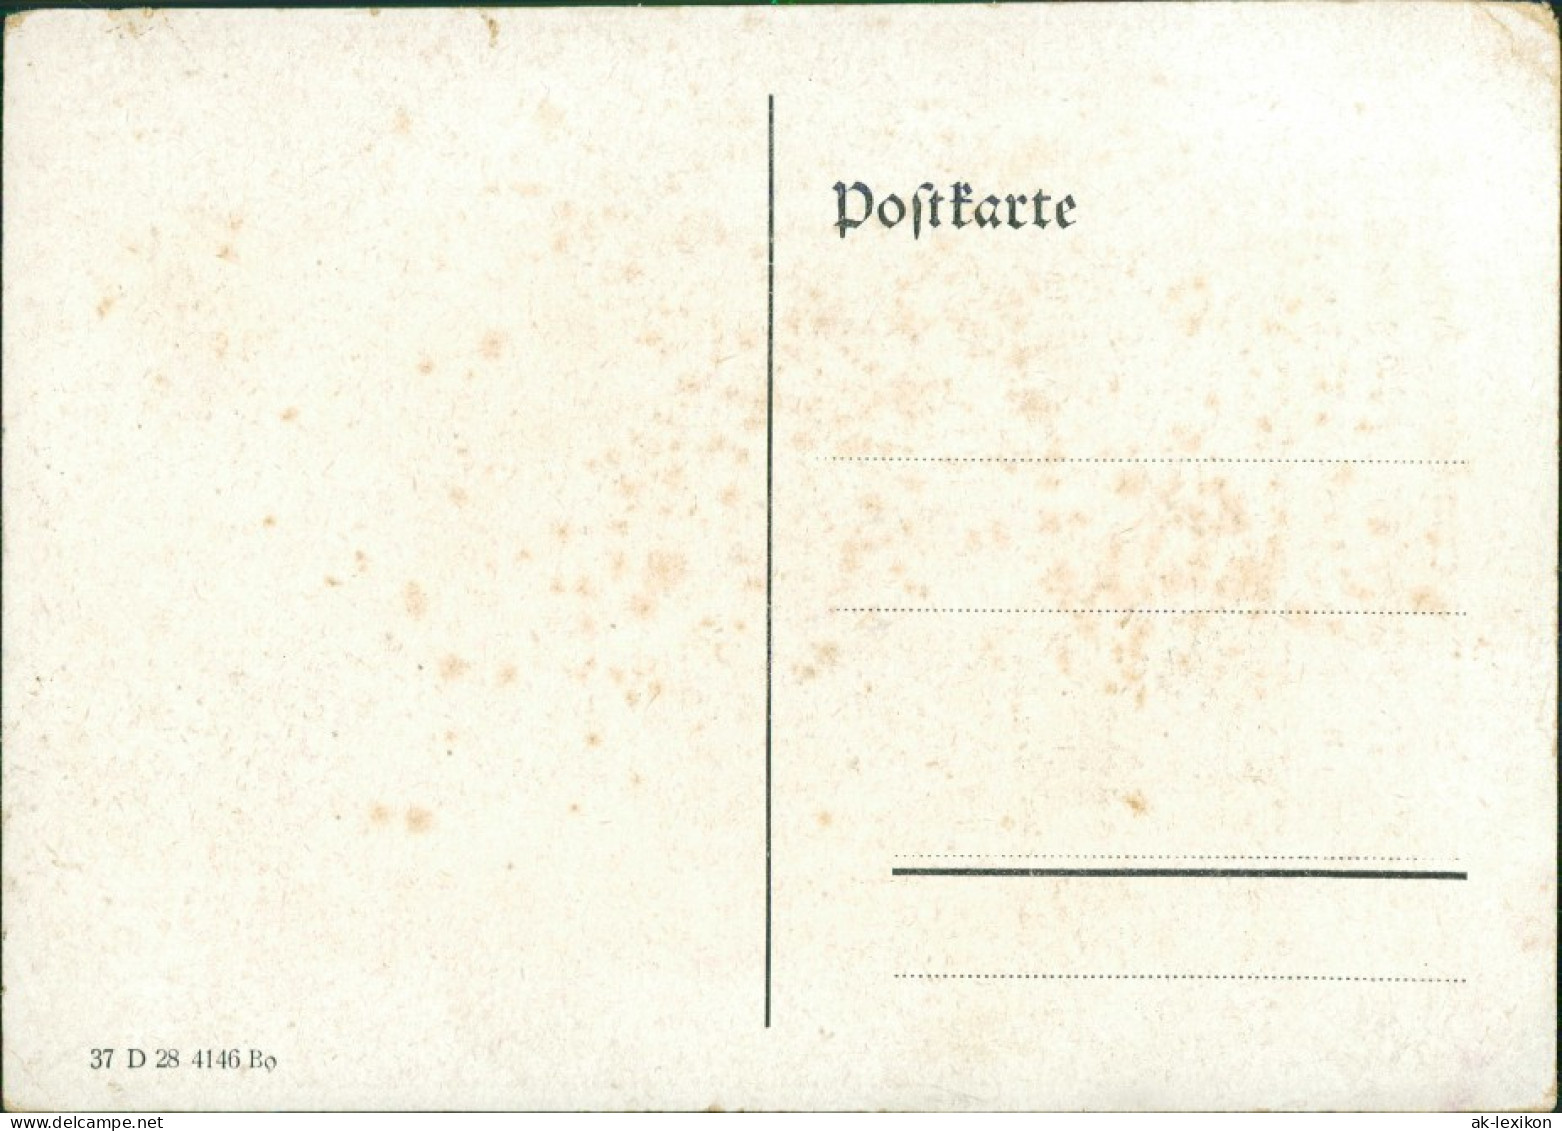 Ansichtskarte  Künstlerwerbekarte: Hederich Kainit Landwirtschaft 1928  - Advertising